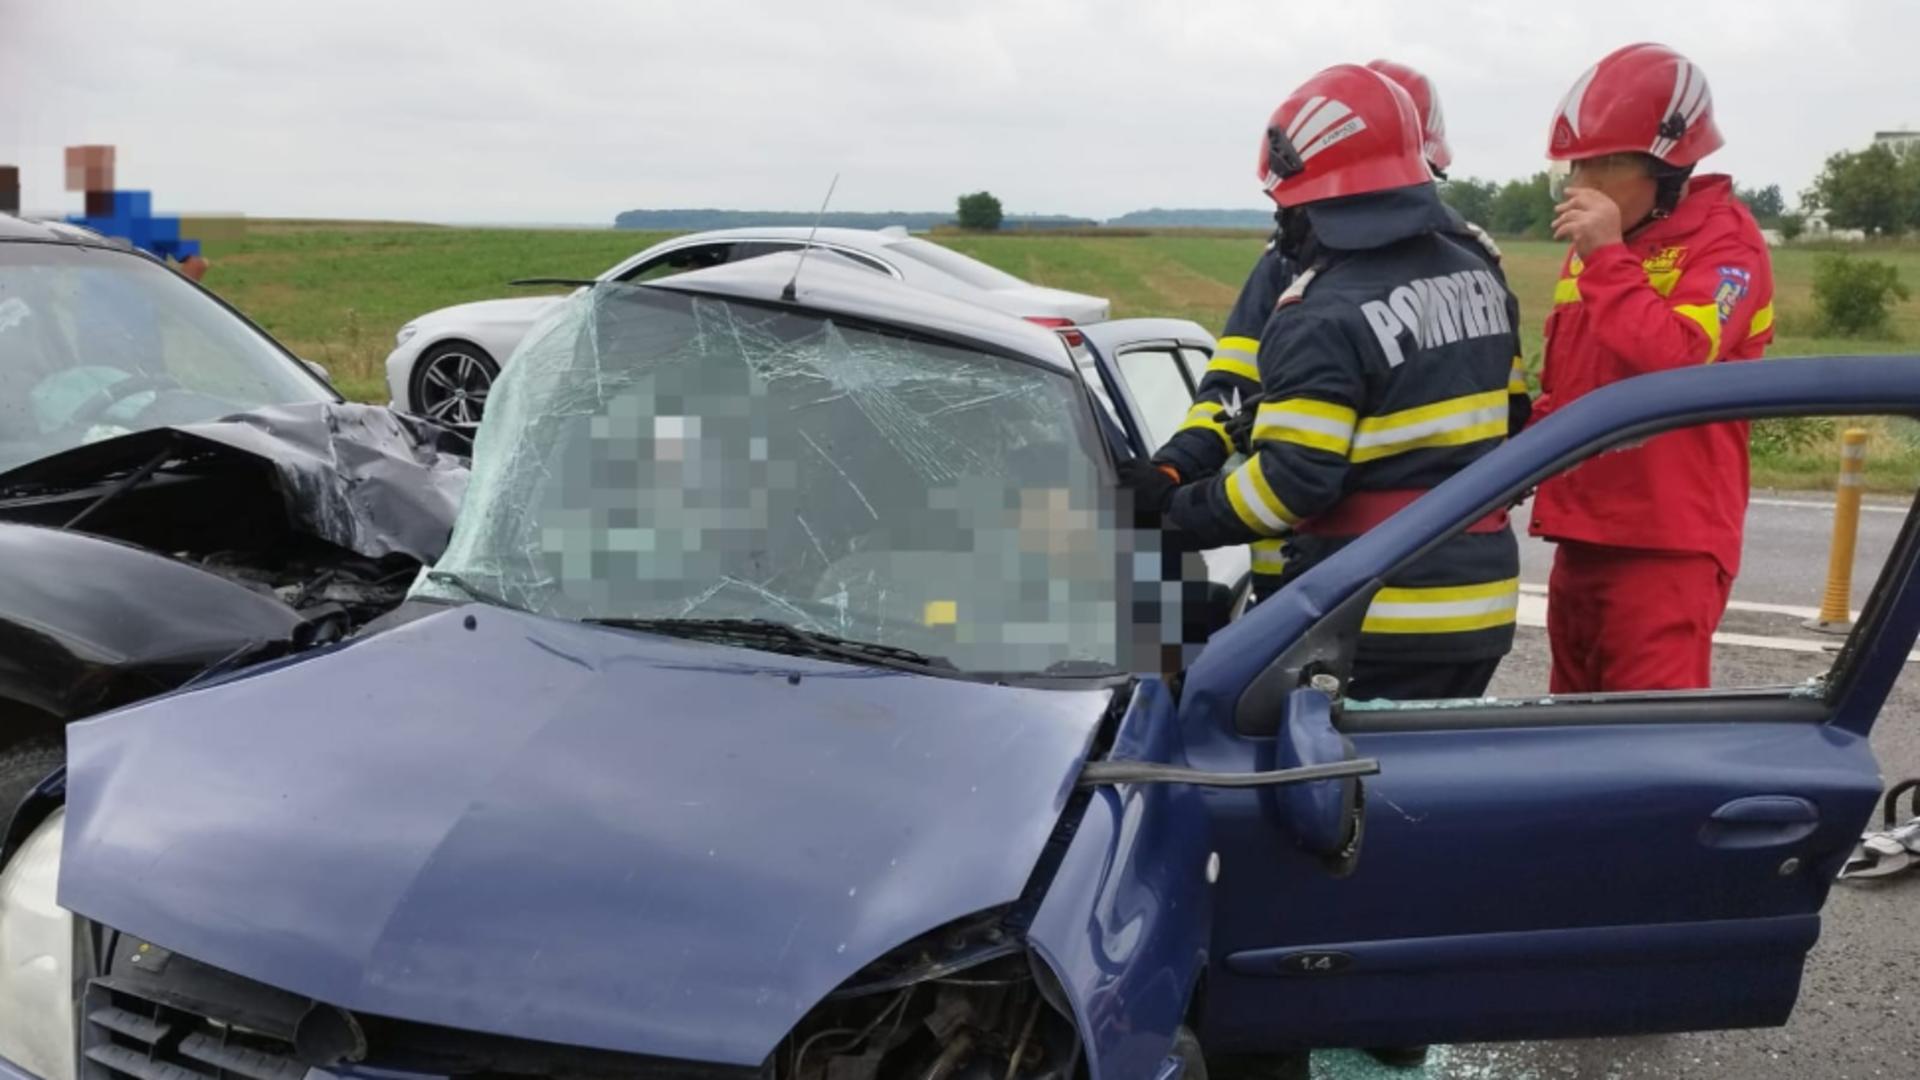 Doi morți și 4 răniți, după ce două mașini s-au ciocnit frontal pe DN2, în județul Ialomița. Trafic restricționat pe sensul de mers Bucureşti-Urziceni - FOTO